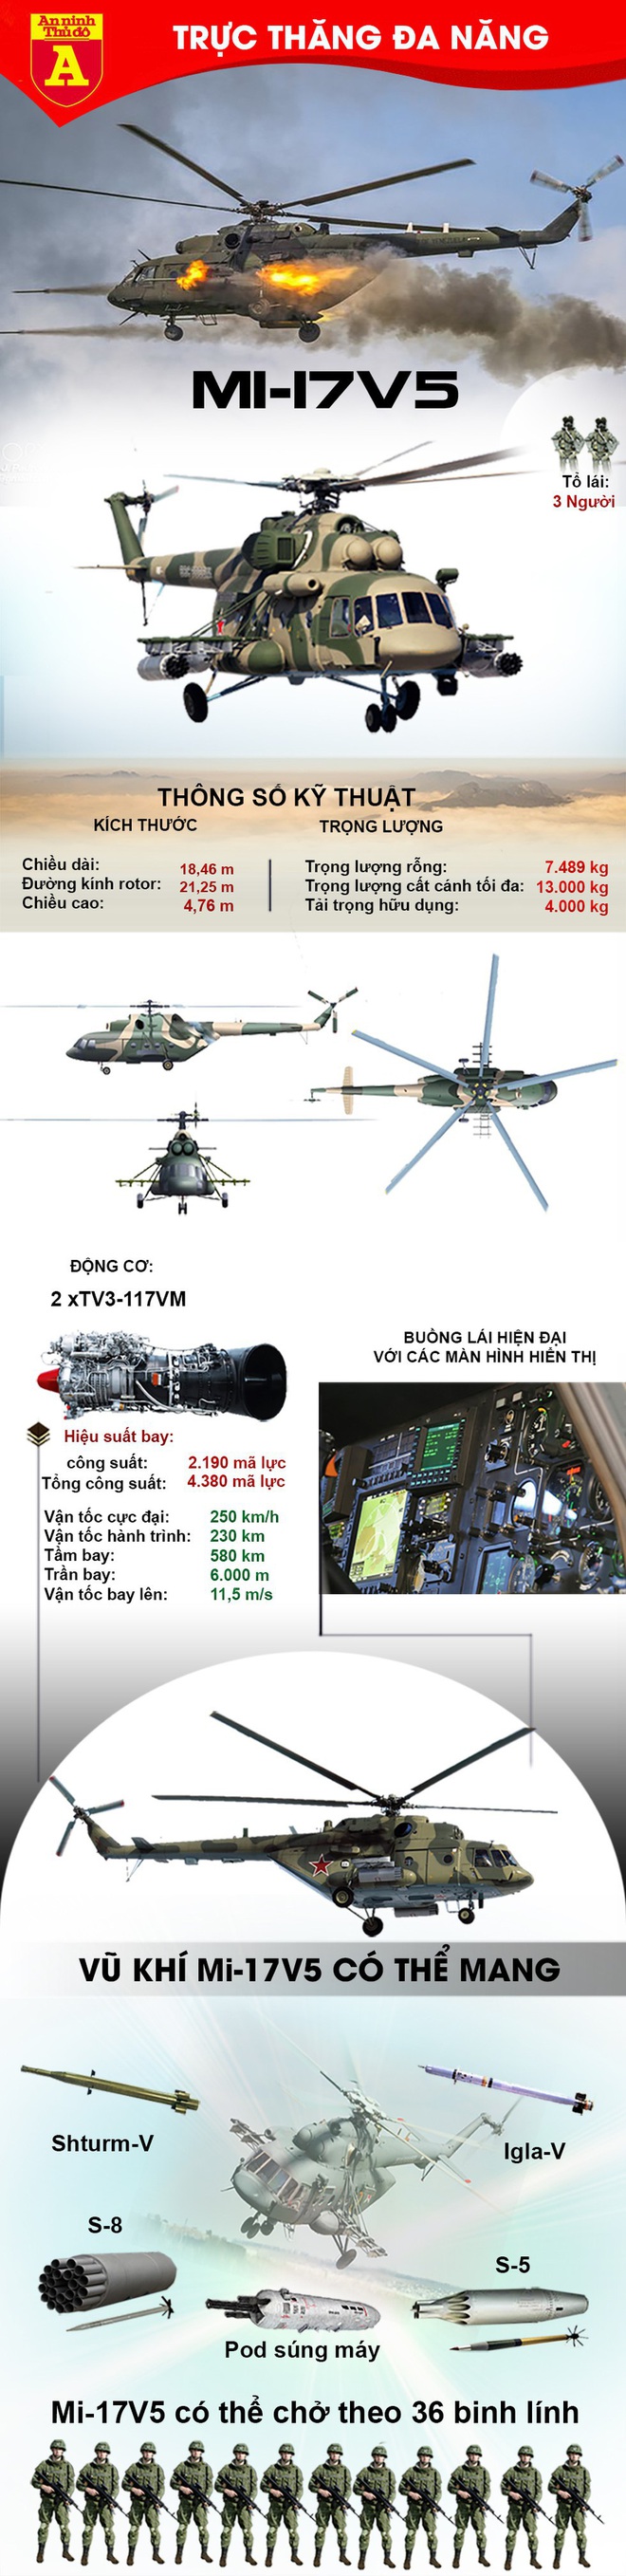 Tại sao Mỹ phải bấm bụng mua Mi-17 Nga để trang bị cho Afghanistan? - Ảnh 2.